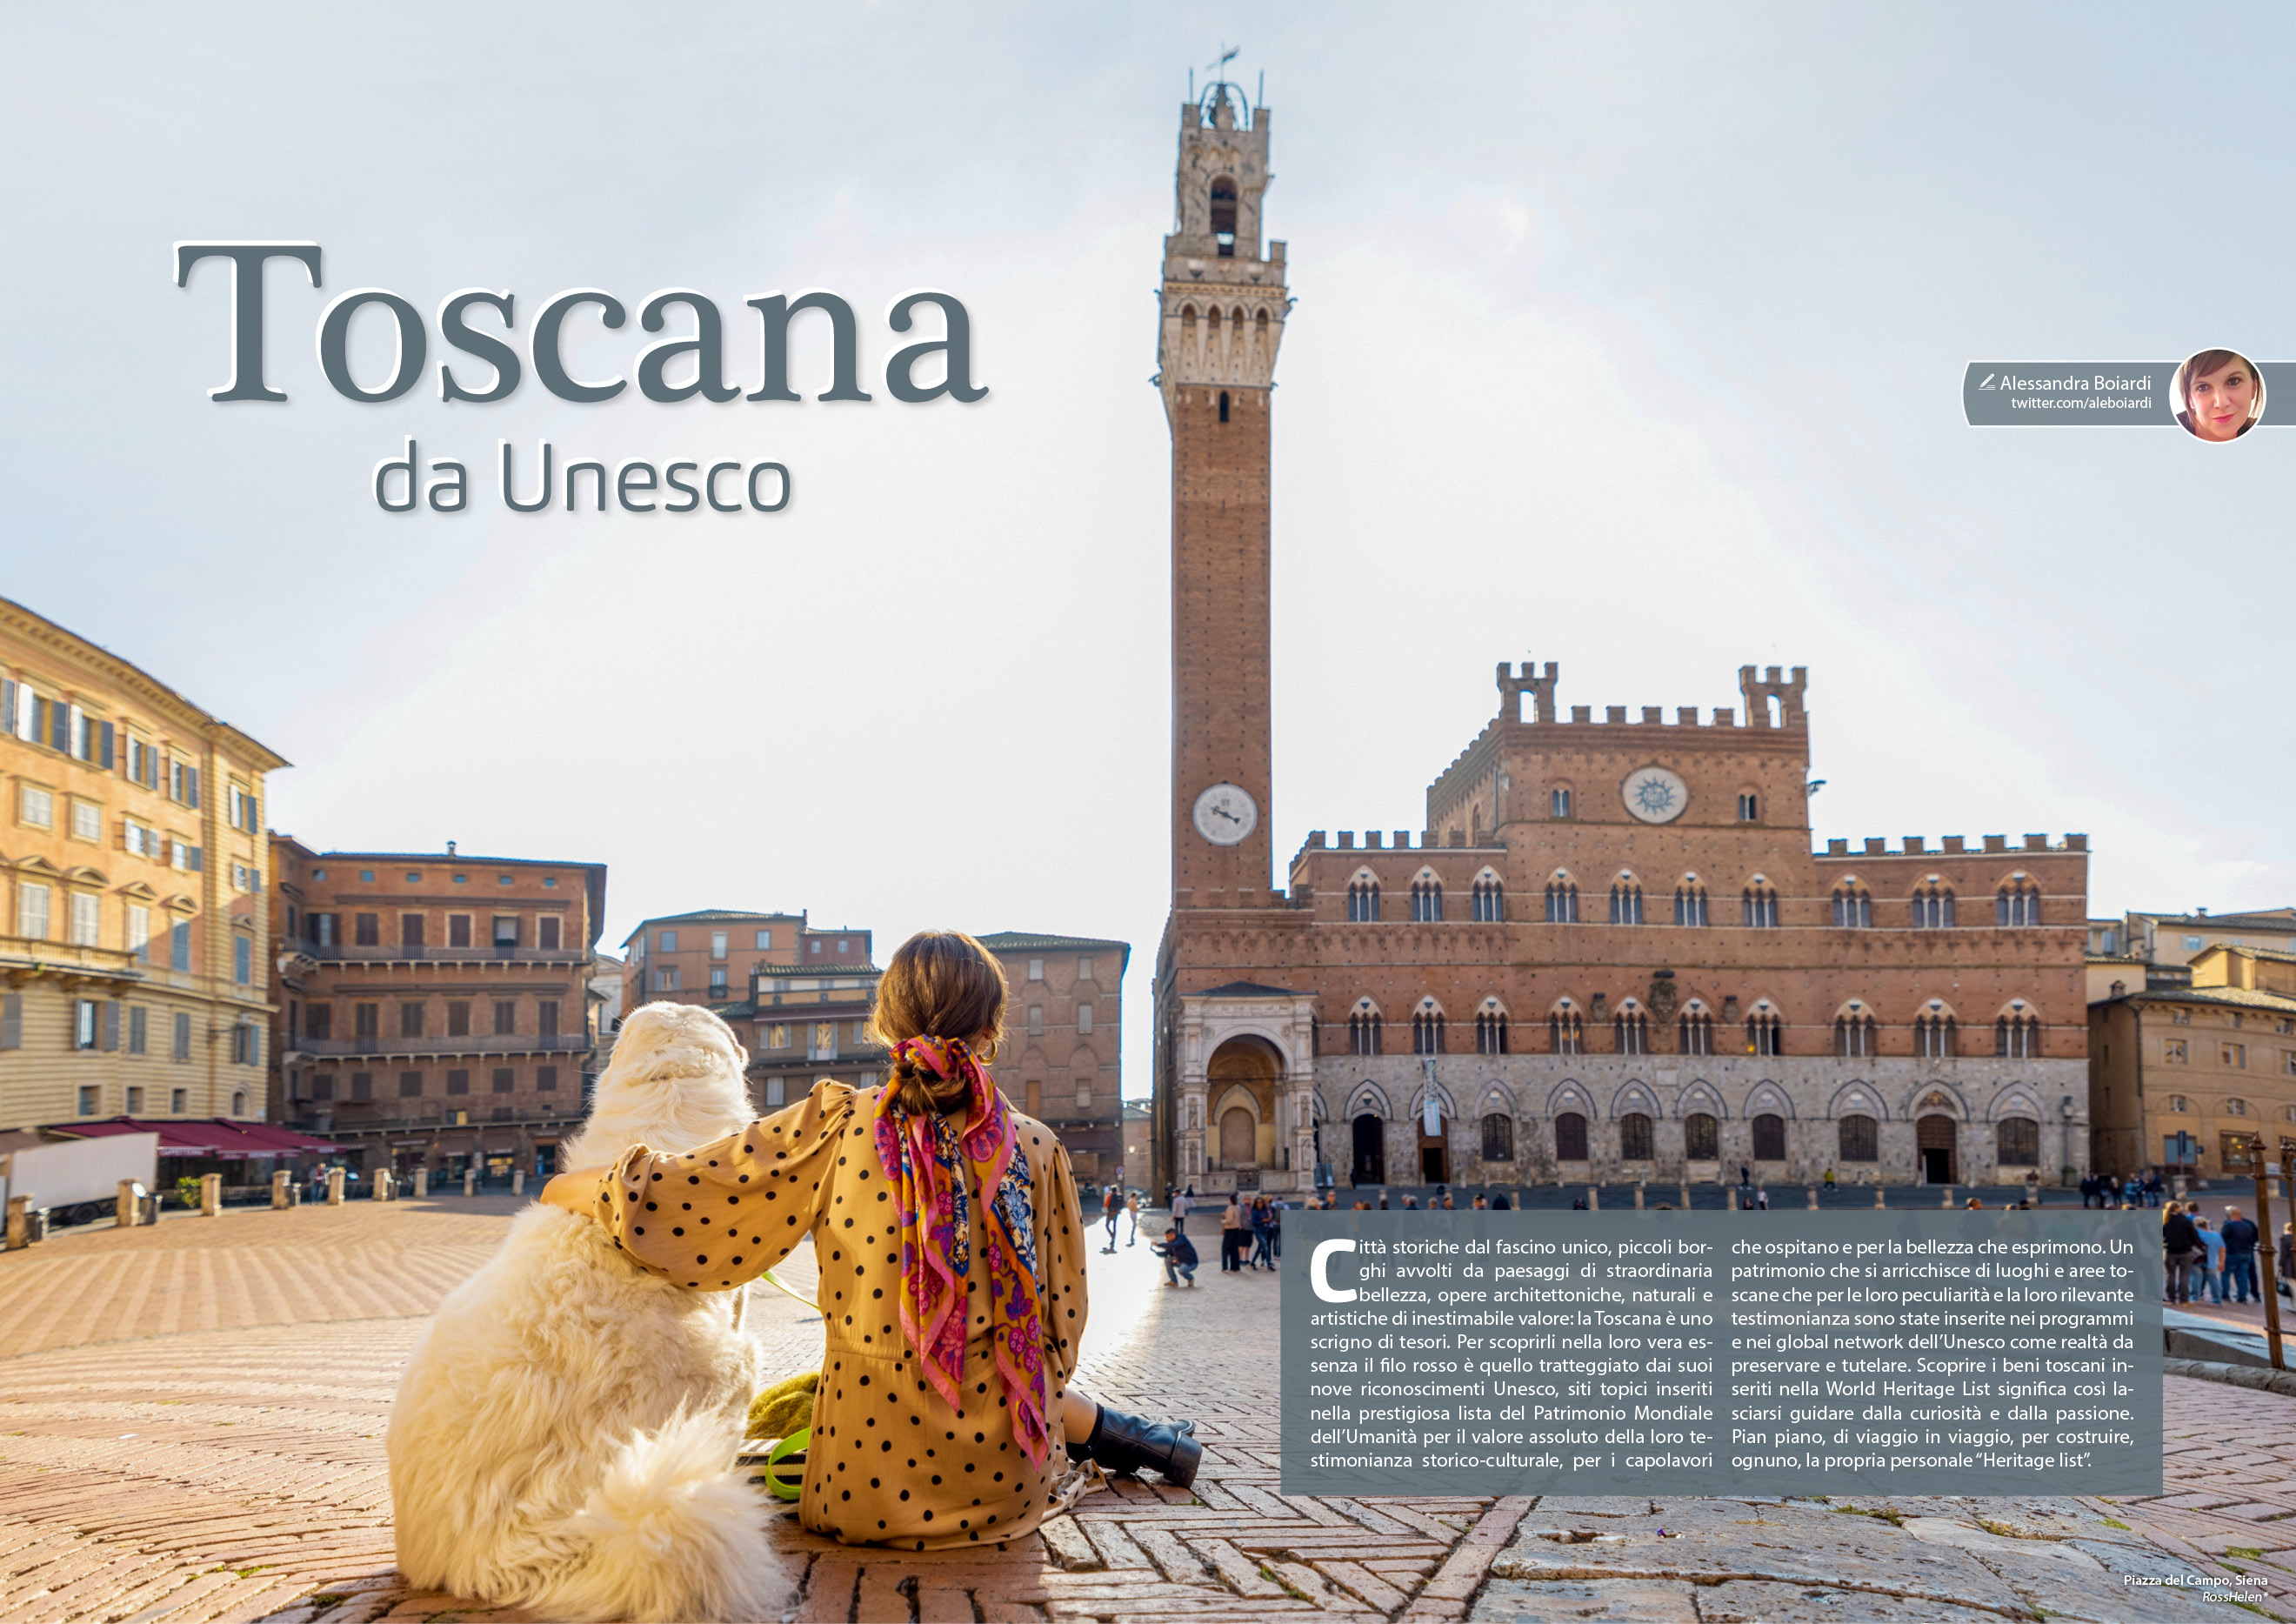 e-borghi travel 37: Speciale borghi pet friendly - Toscana da Unesco